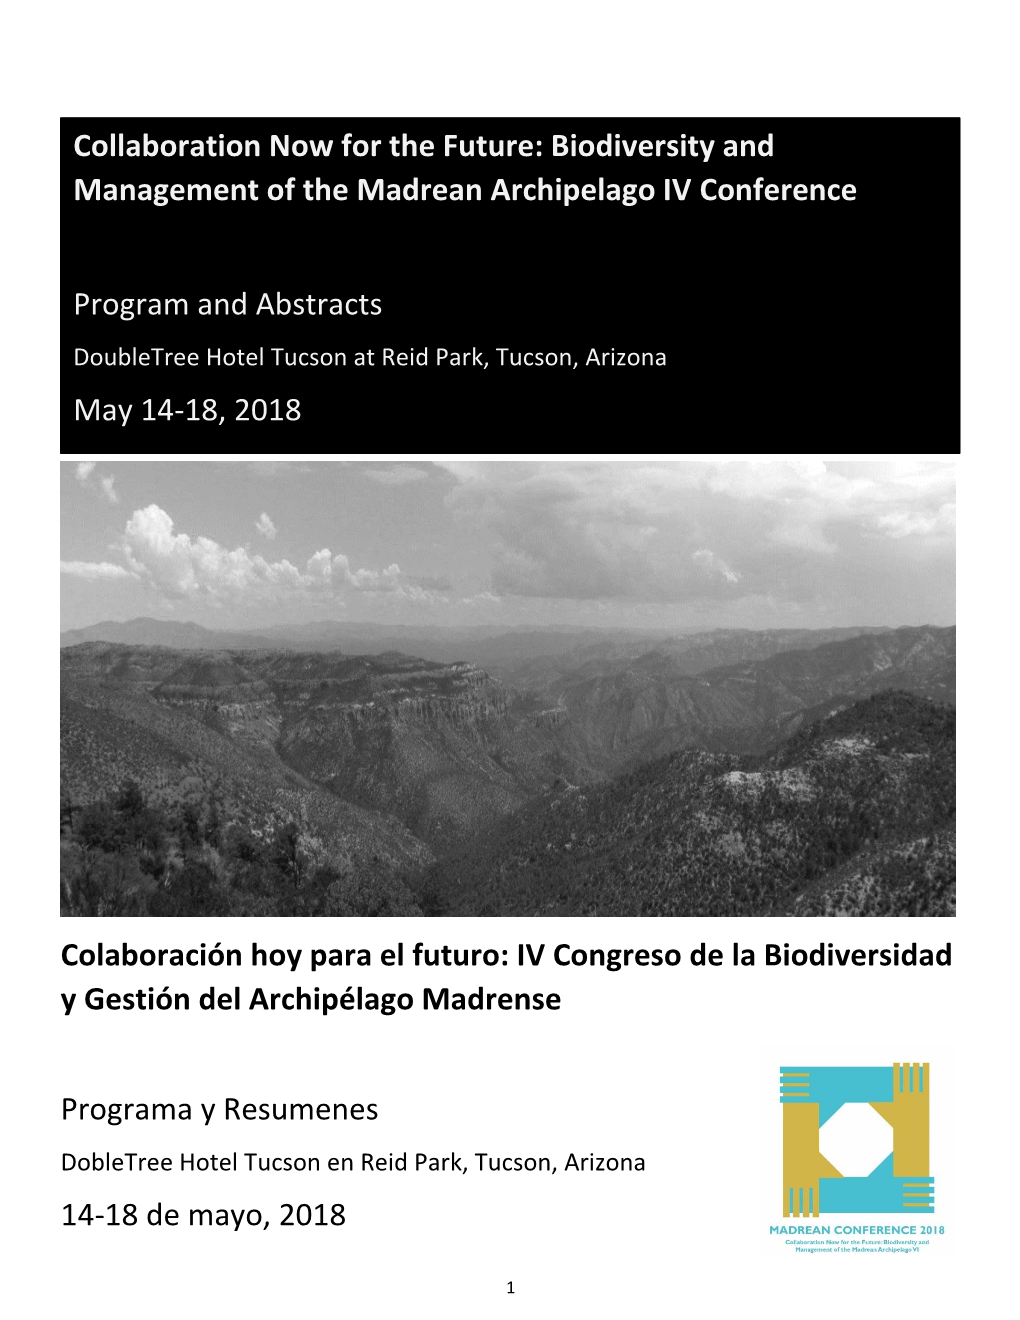 Colaboración Hoy Para El Futuro: IV Congreso De La Biodiversidad Y Gestión Del Archipélago Madrense